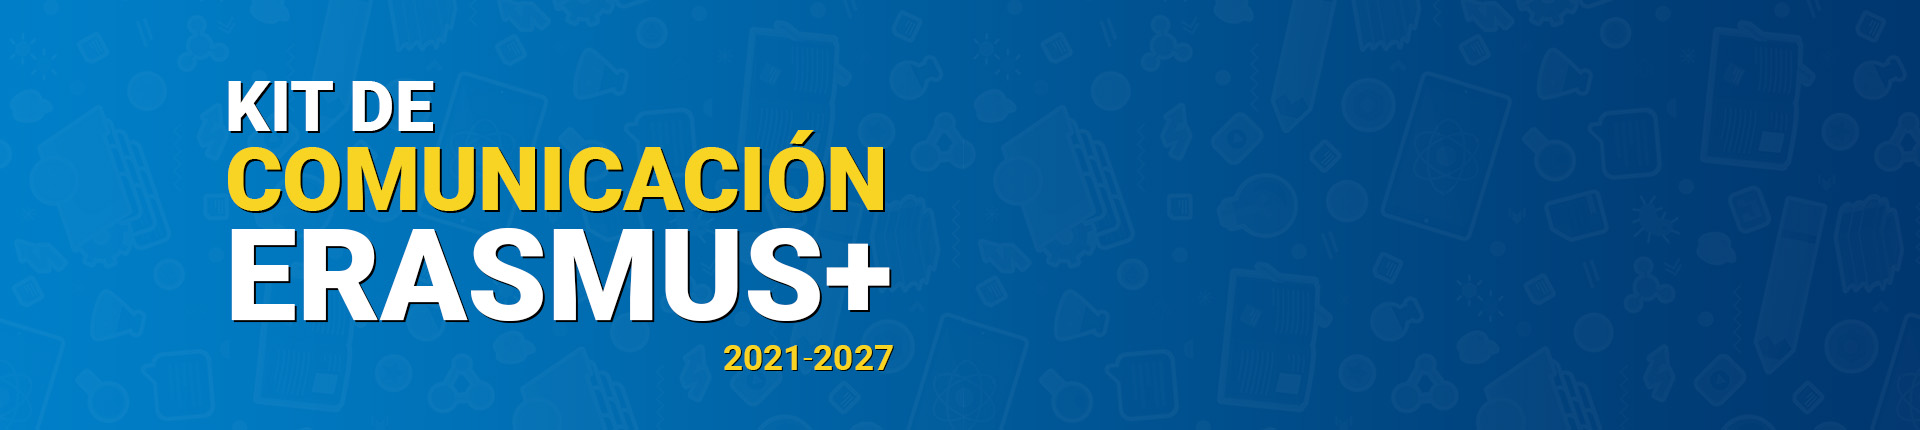 Kit de Comunicación para proyectos Erasmus+ 201-2027